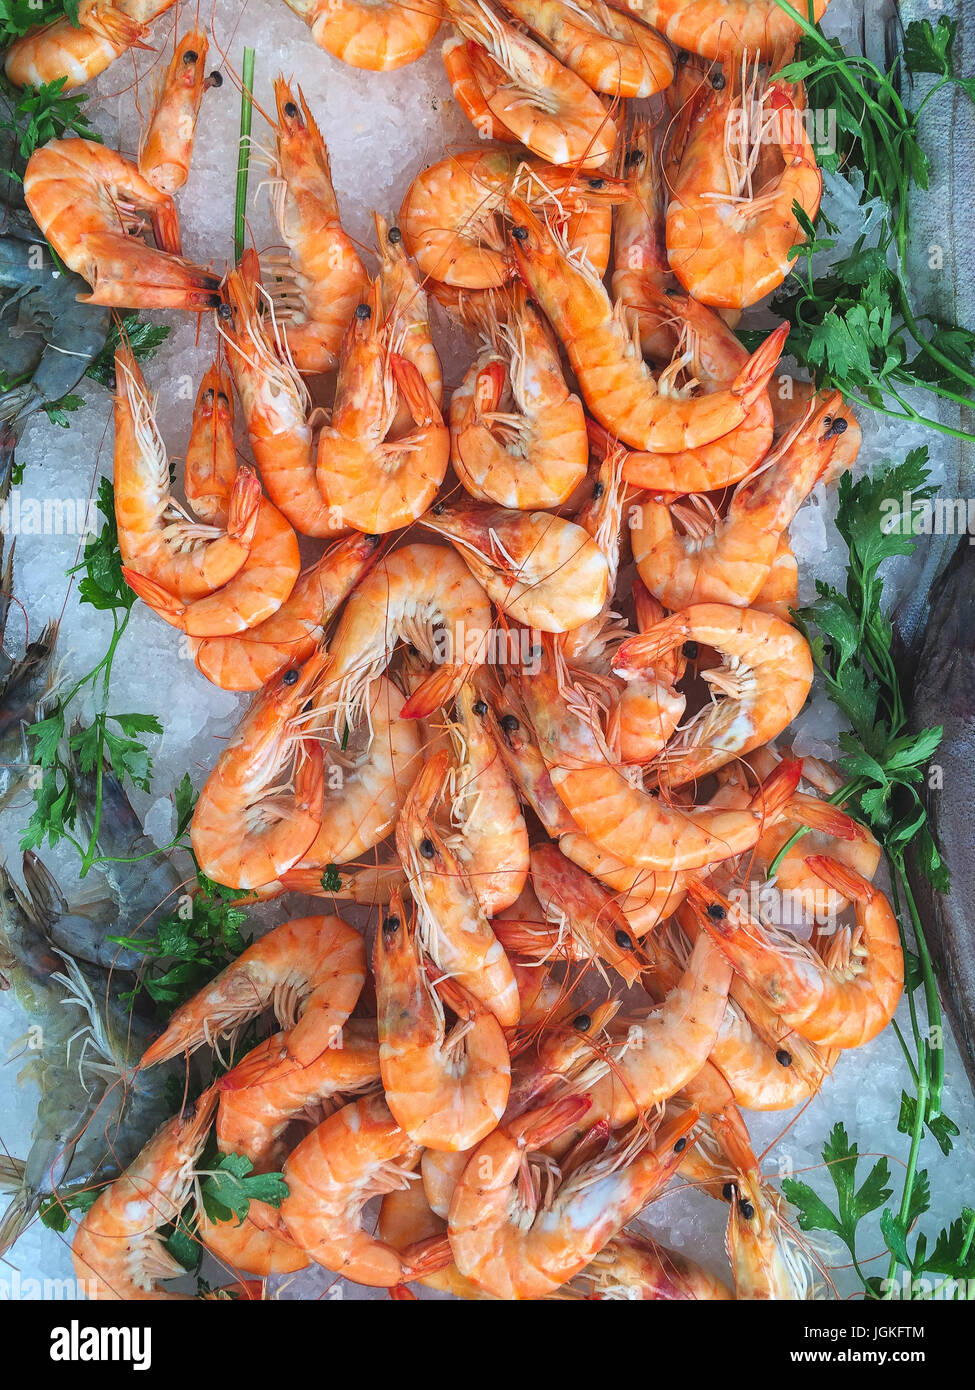 Blocage de fruits de mer sur un marché provençal avec des crevettes géantes et prêt à manger des crevettes. Banque D'Images